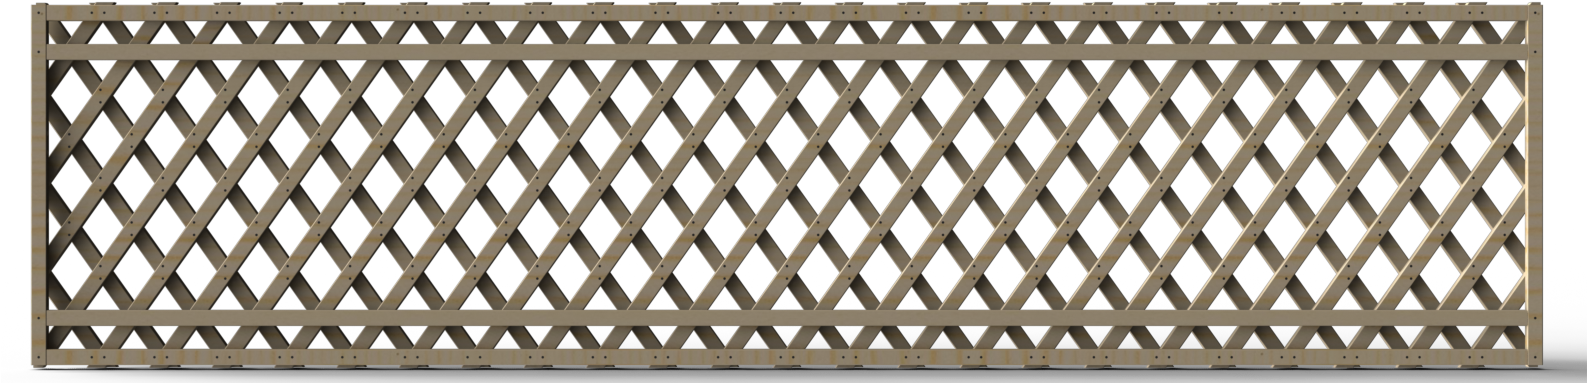 Wooden Lattice Panel